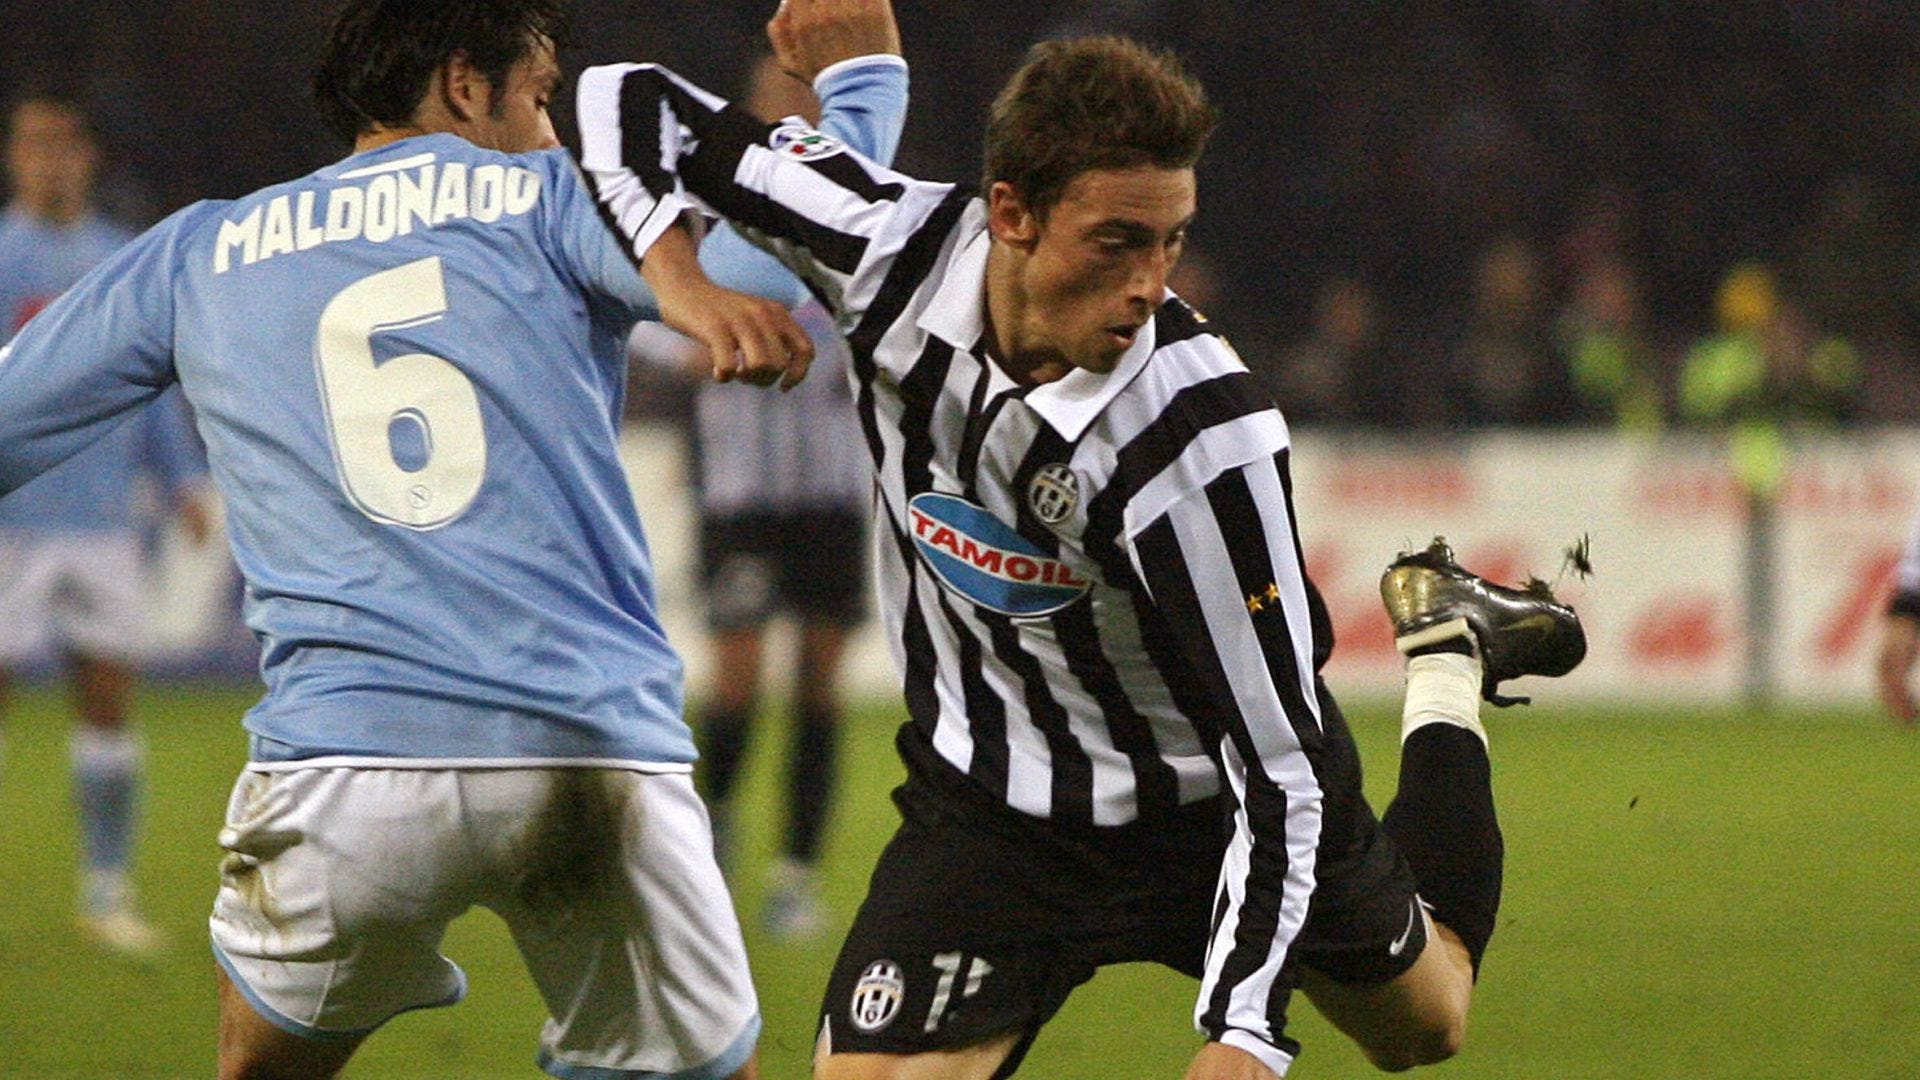 Mengenang Skuad Juventus Juara Serie B 2006/07, Di Mana Mereka Sekarang?